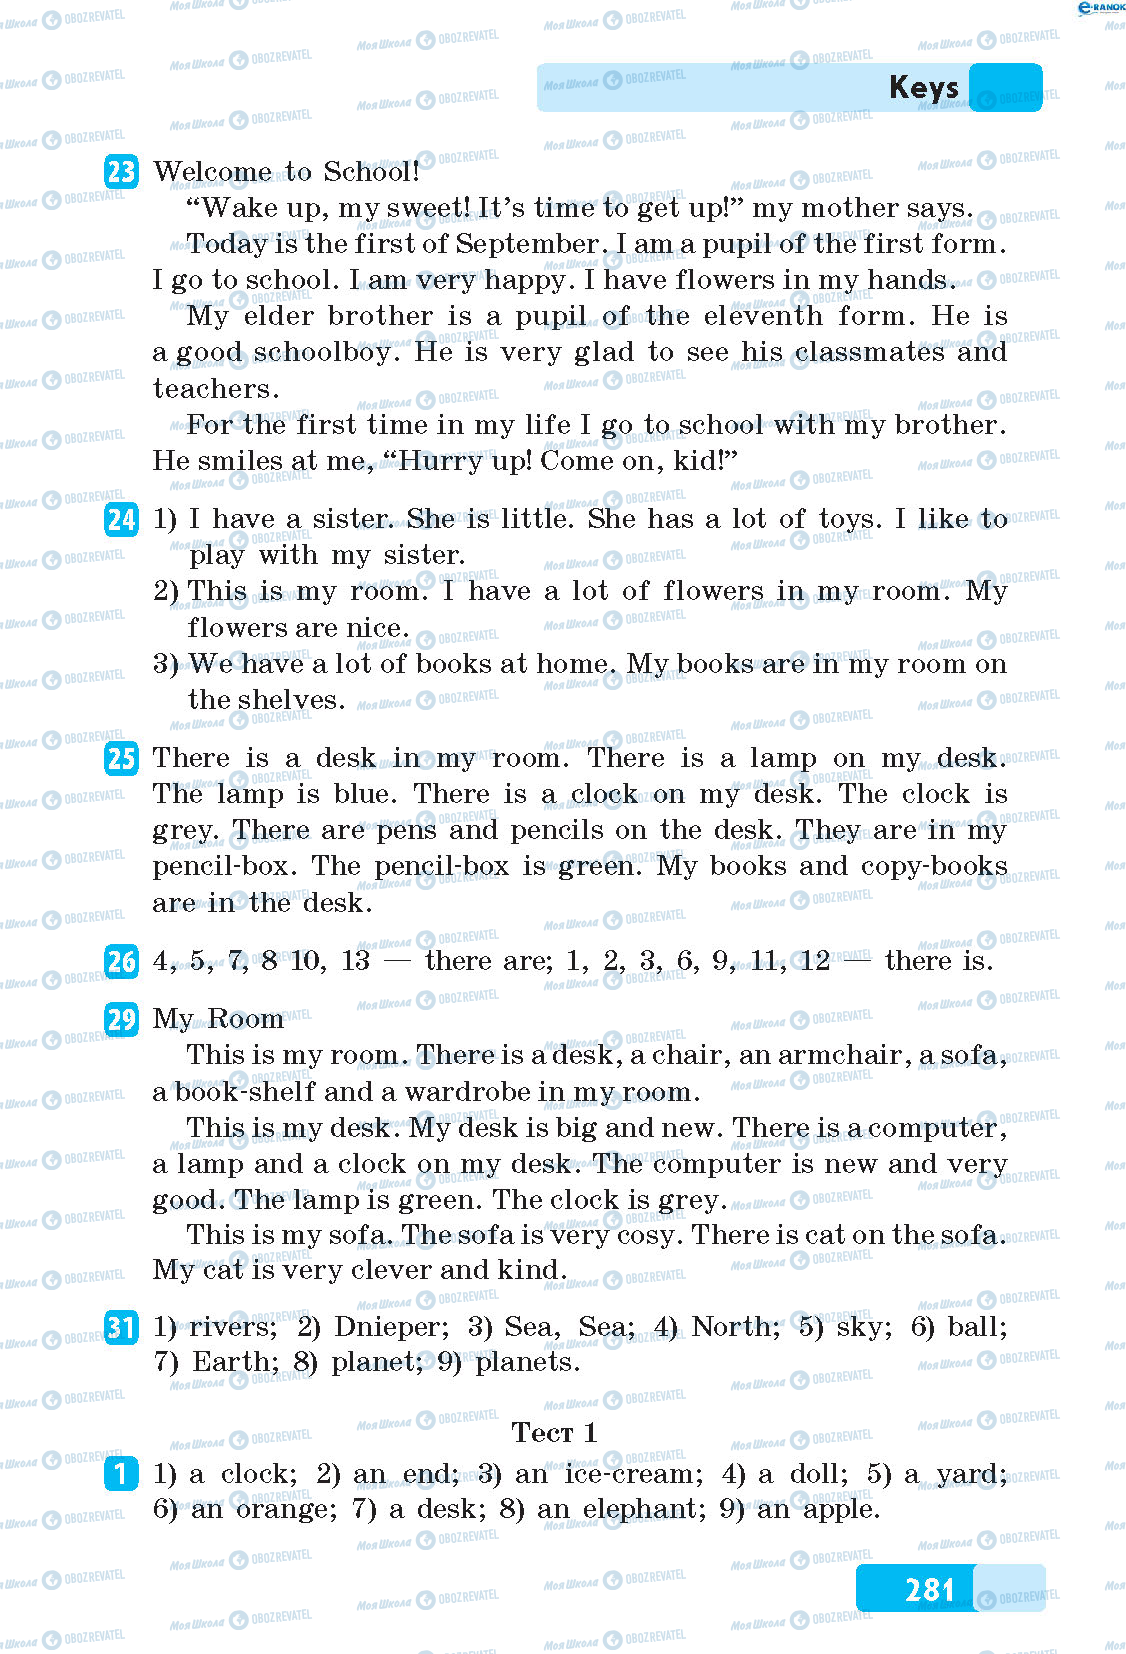 ГДЗ Английский язык 5 класс страница 23-31